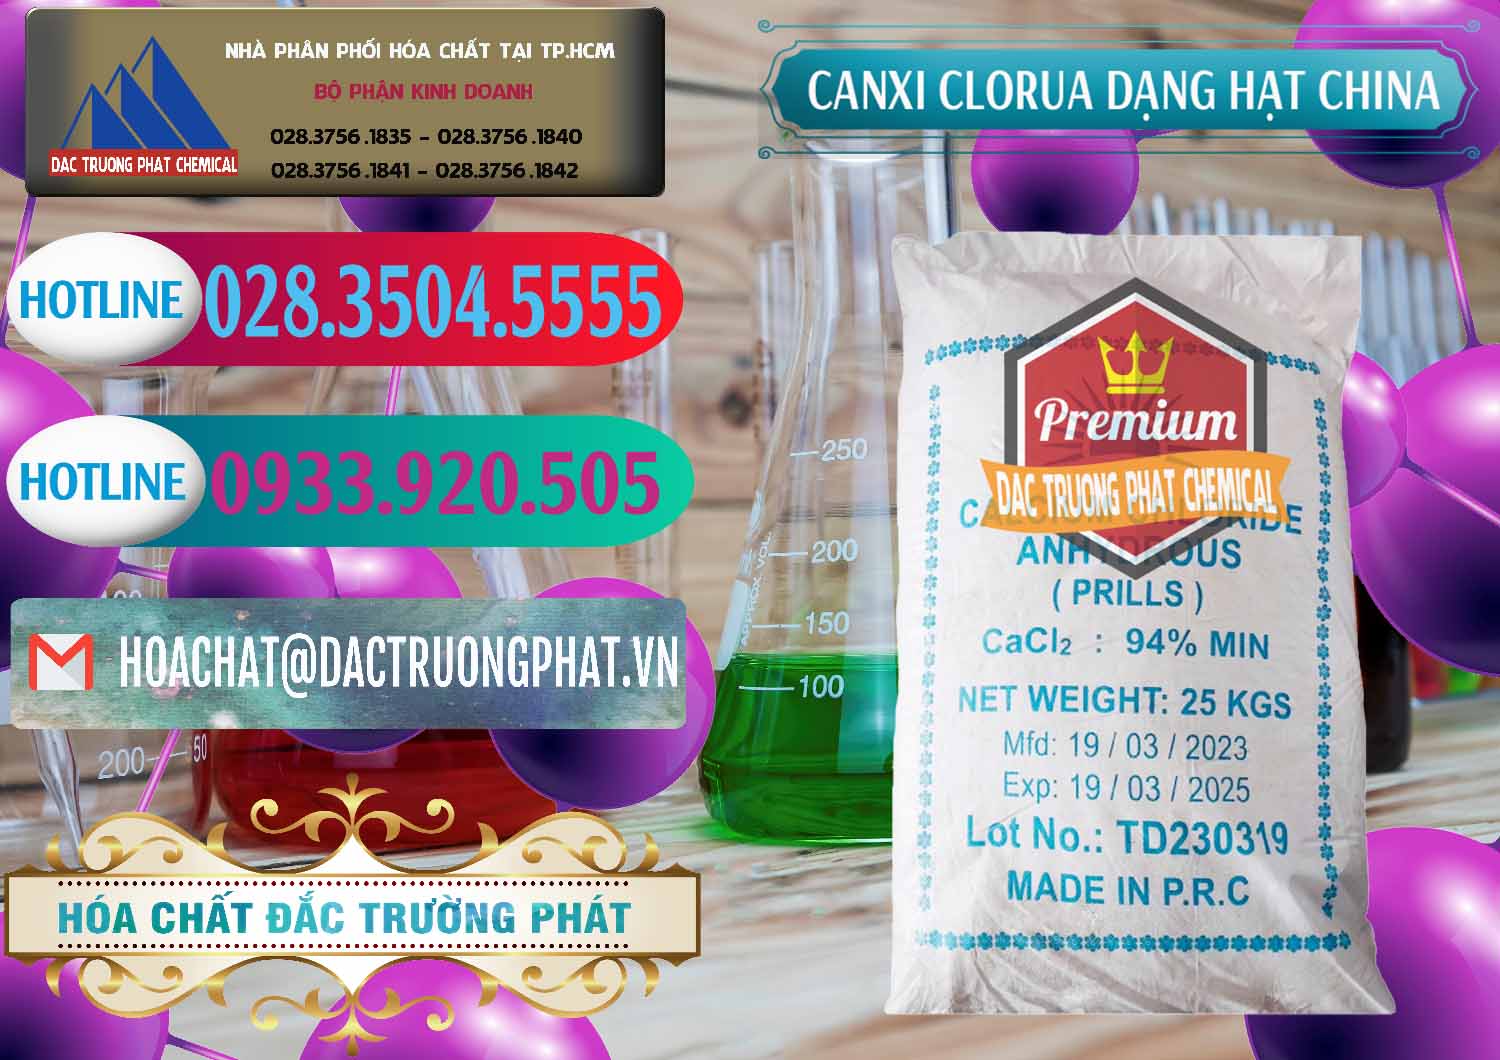 Nơi chuyên nhập khẩu - bán CaCl2 – Canxi Clorua 94% Dạng Hạt Trung Quốc China - 0373 - Đơn vị chuyên cung cấp _ bán hóa chất tại TP.HCM - truongphat.vn